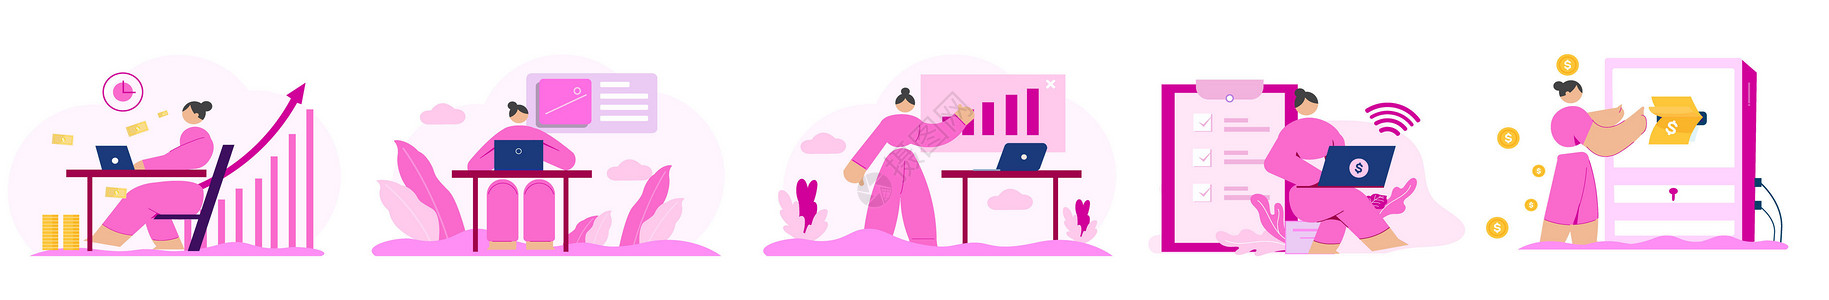 钱海报素材紫色简约小人金融类商务矢量SVG插画插画